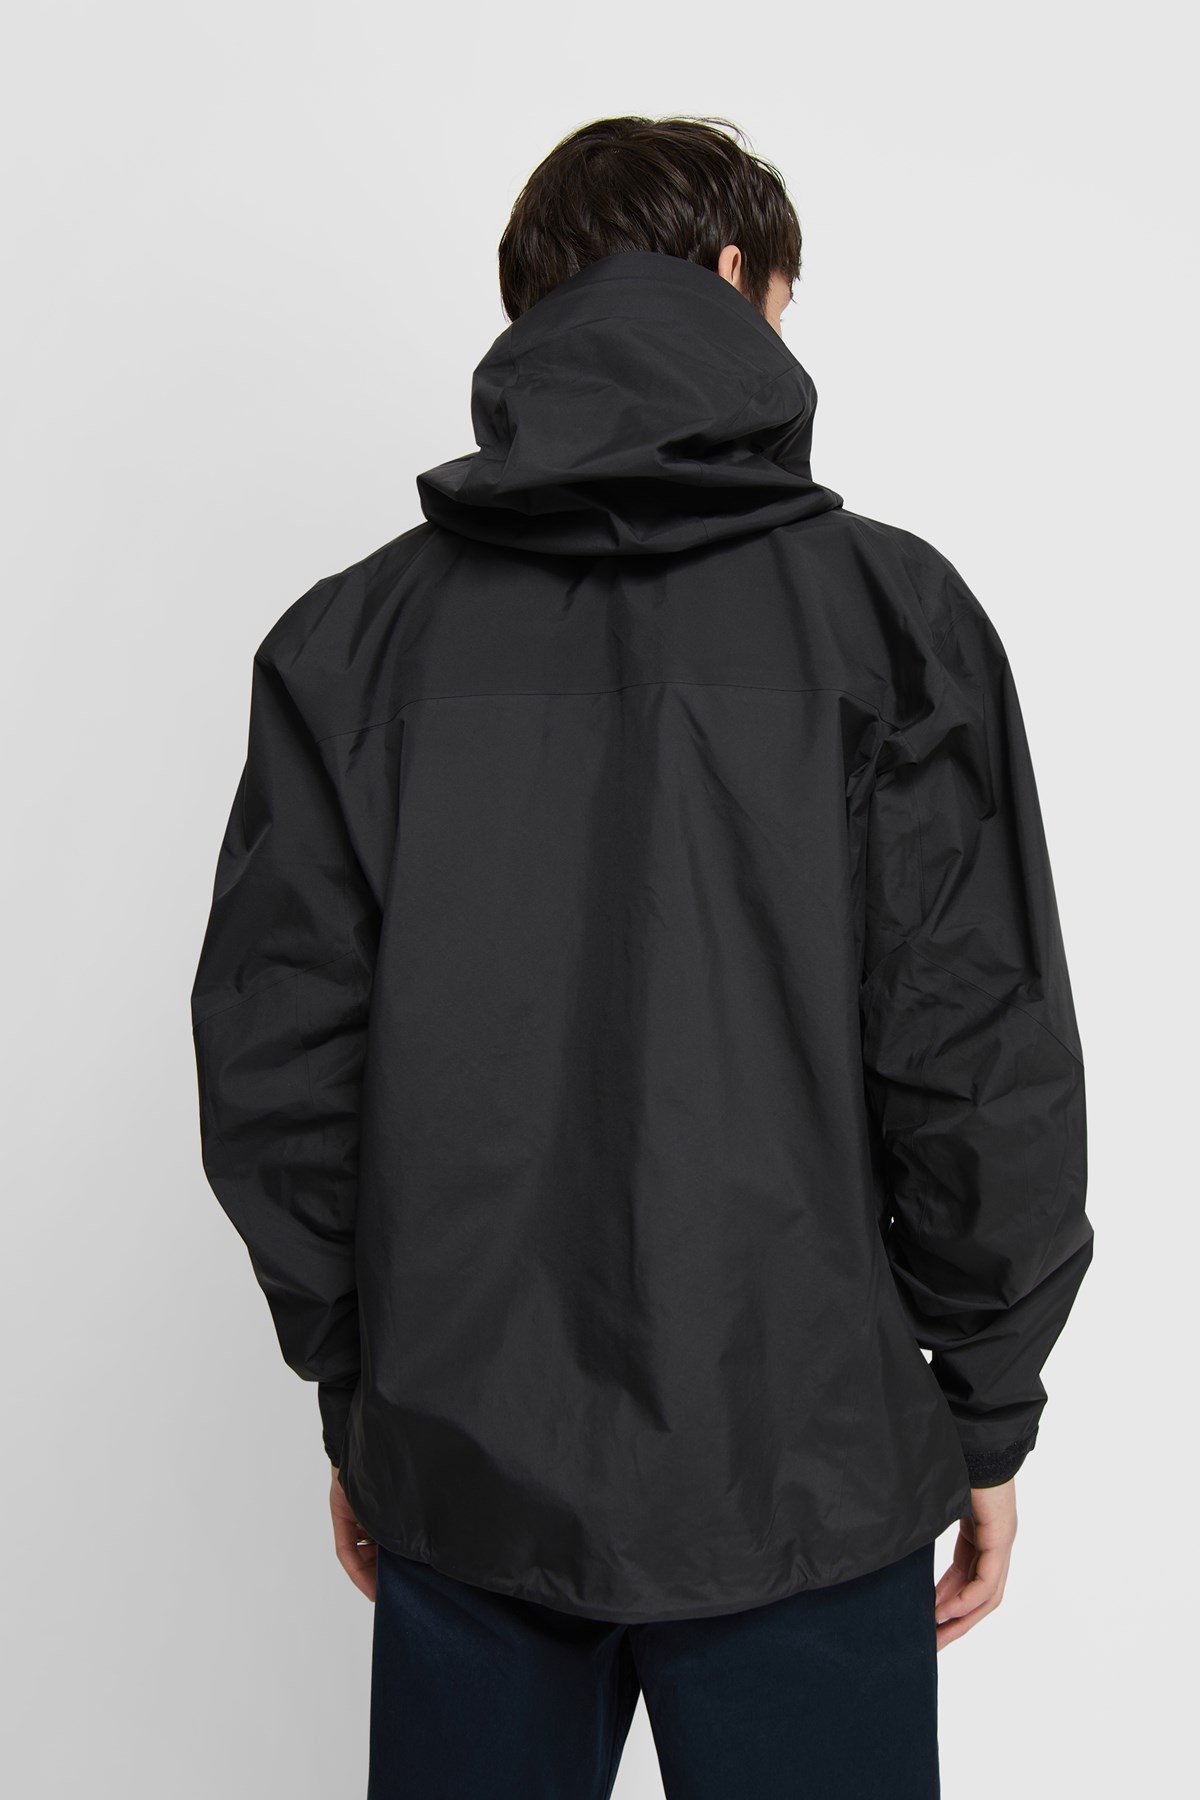 ARC'TERYX Beta AR Jacket Men's Black | WoodWood.com